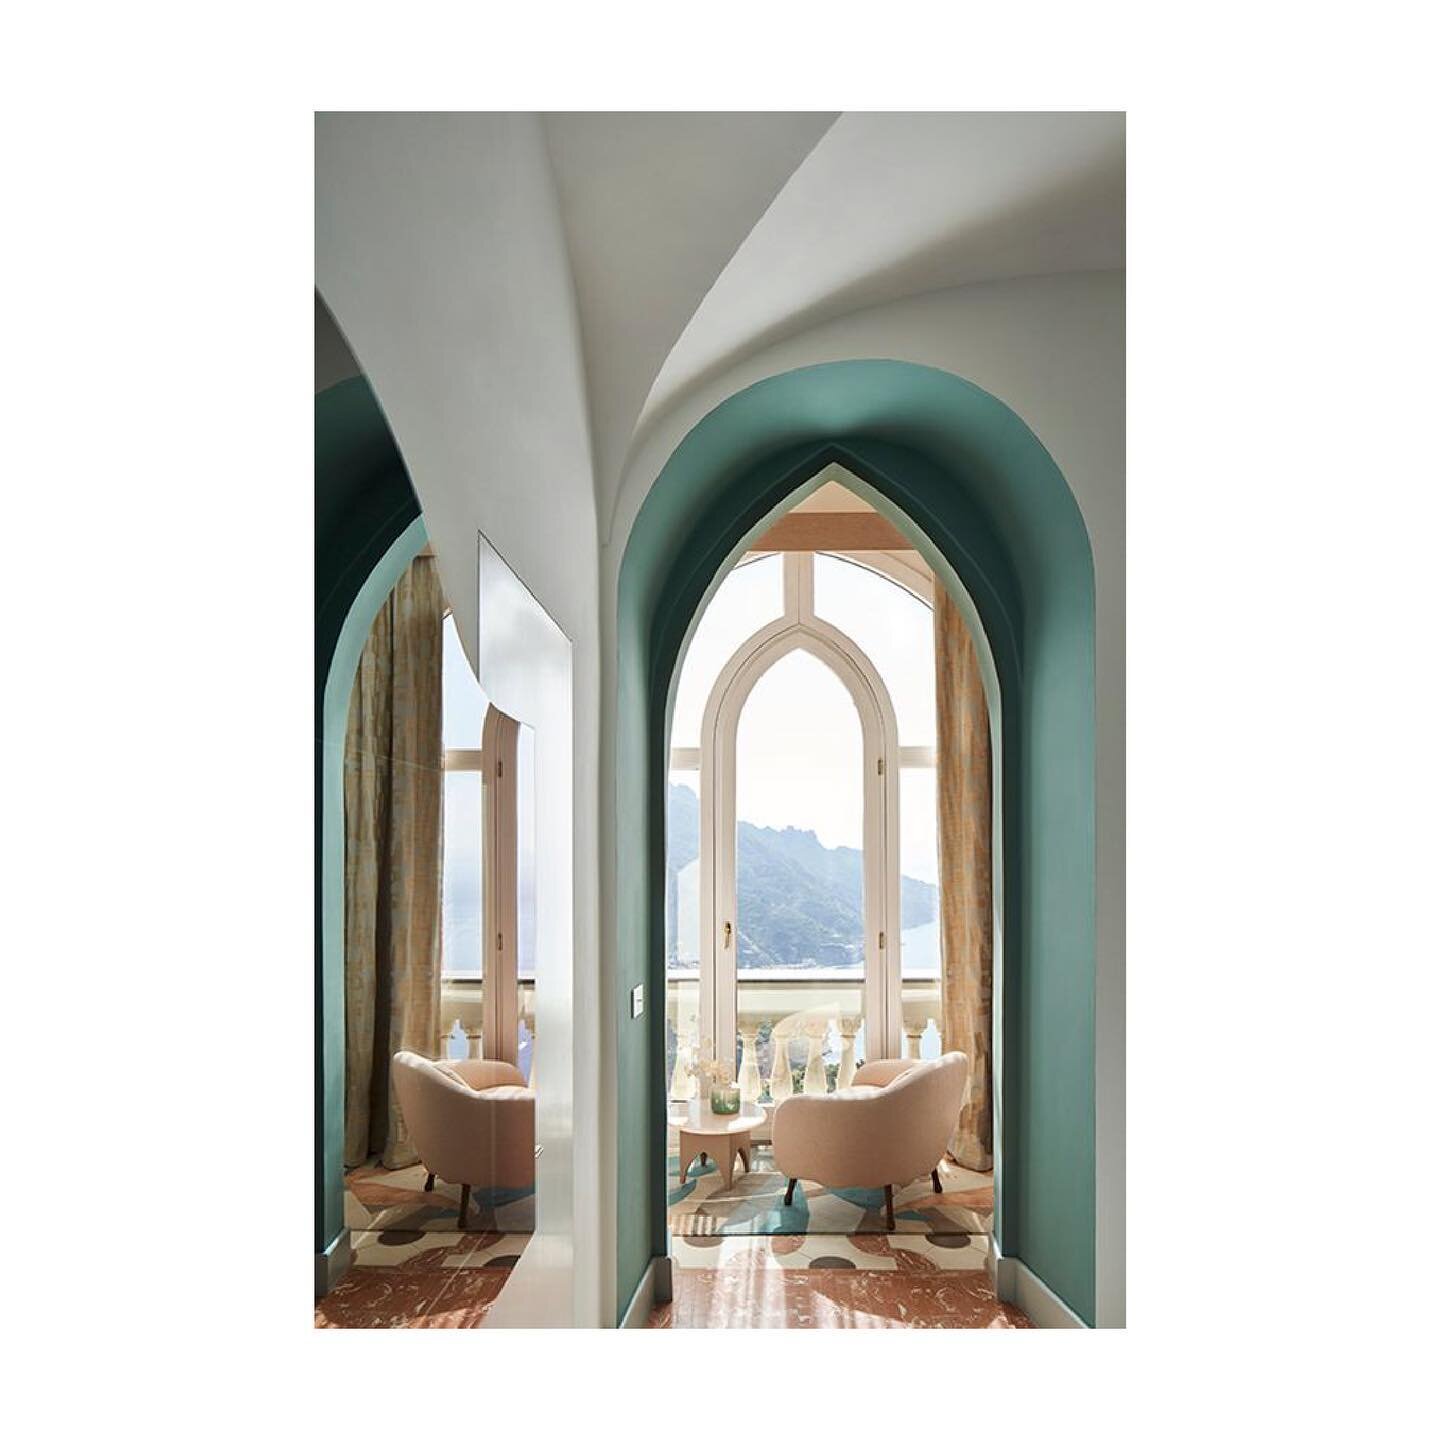 The Amalfi Coast&rsquo;s Palazzo Avino hotel capsule collection by Cristina Celestino